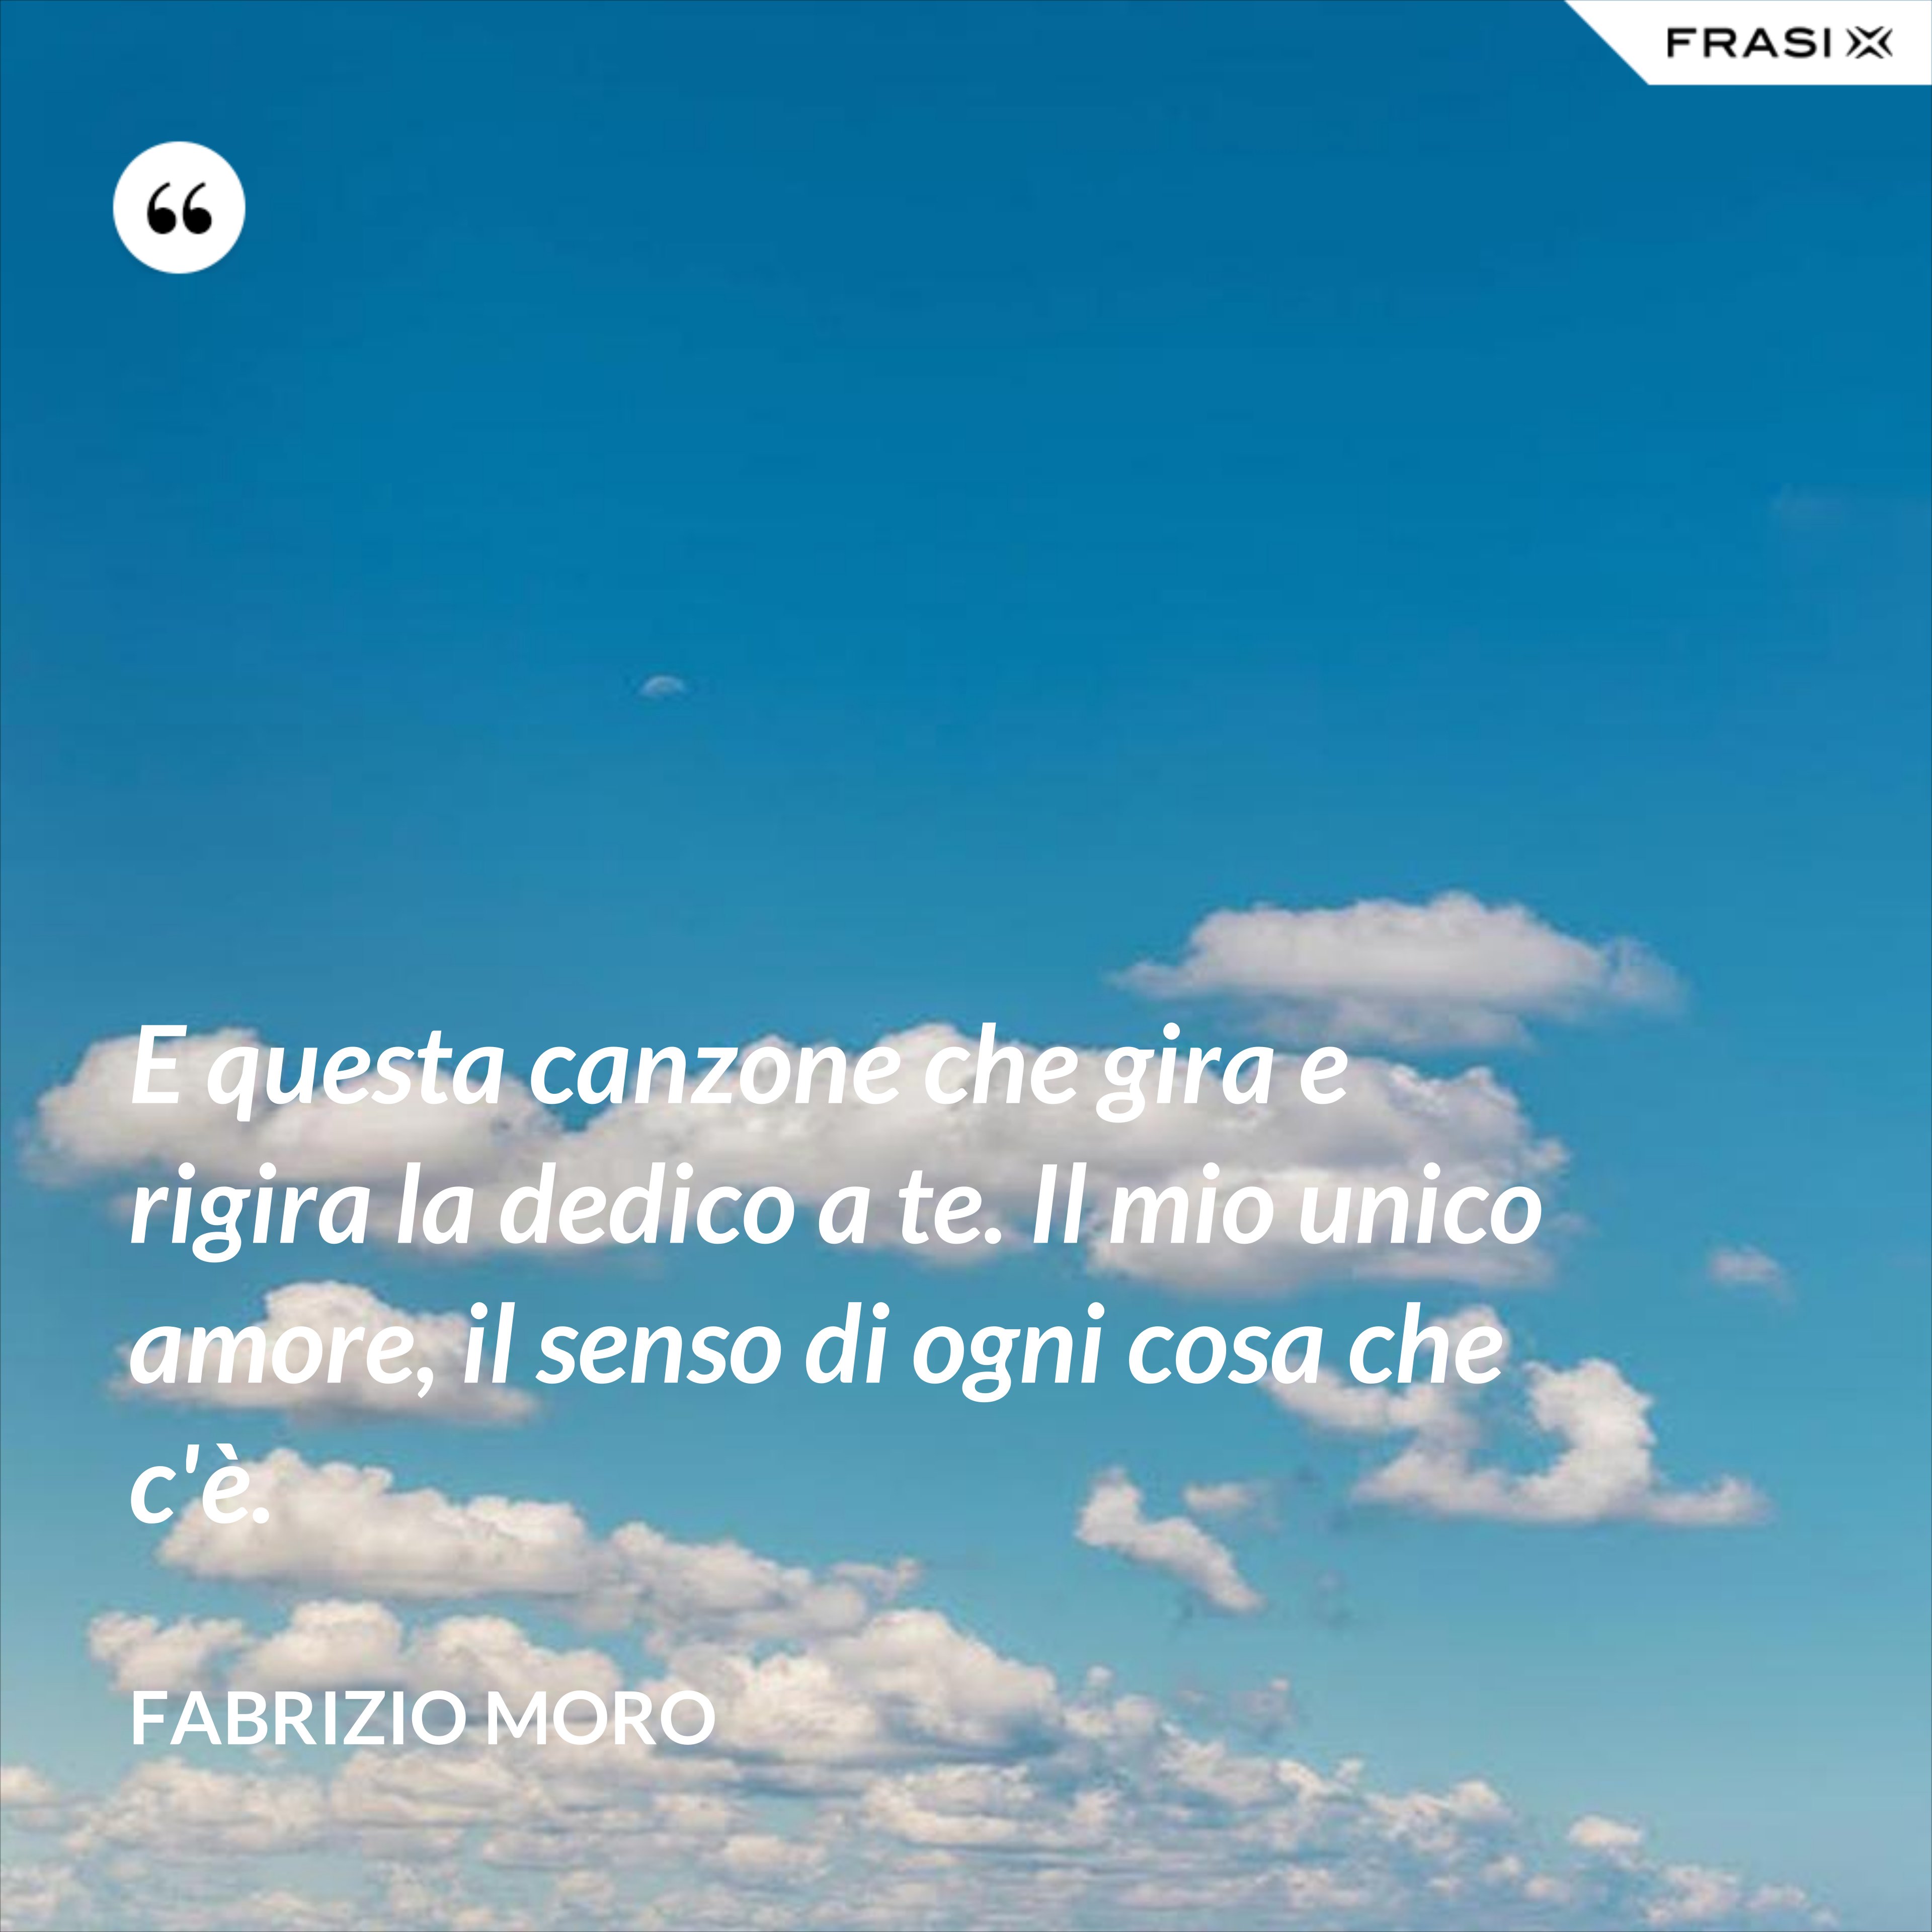 E questa canzone che gira e rigira la dedico a te. Il mio unico amore, il senso di ogni cosa che c'è. - Fabrizio Moro